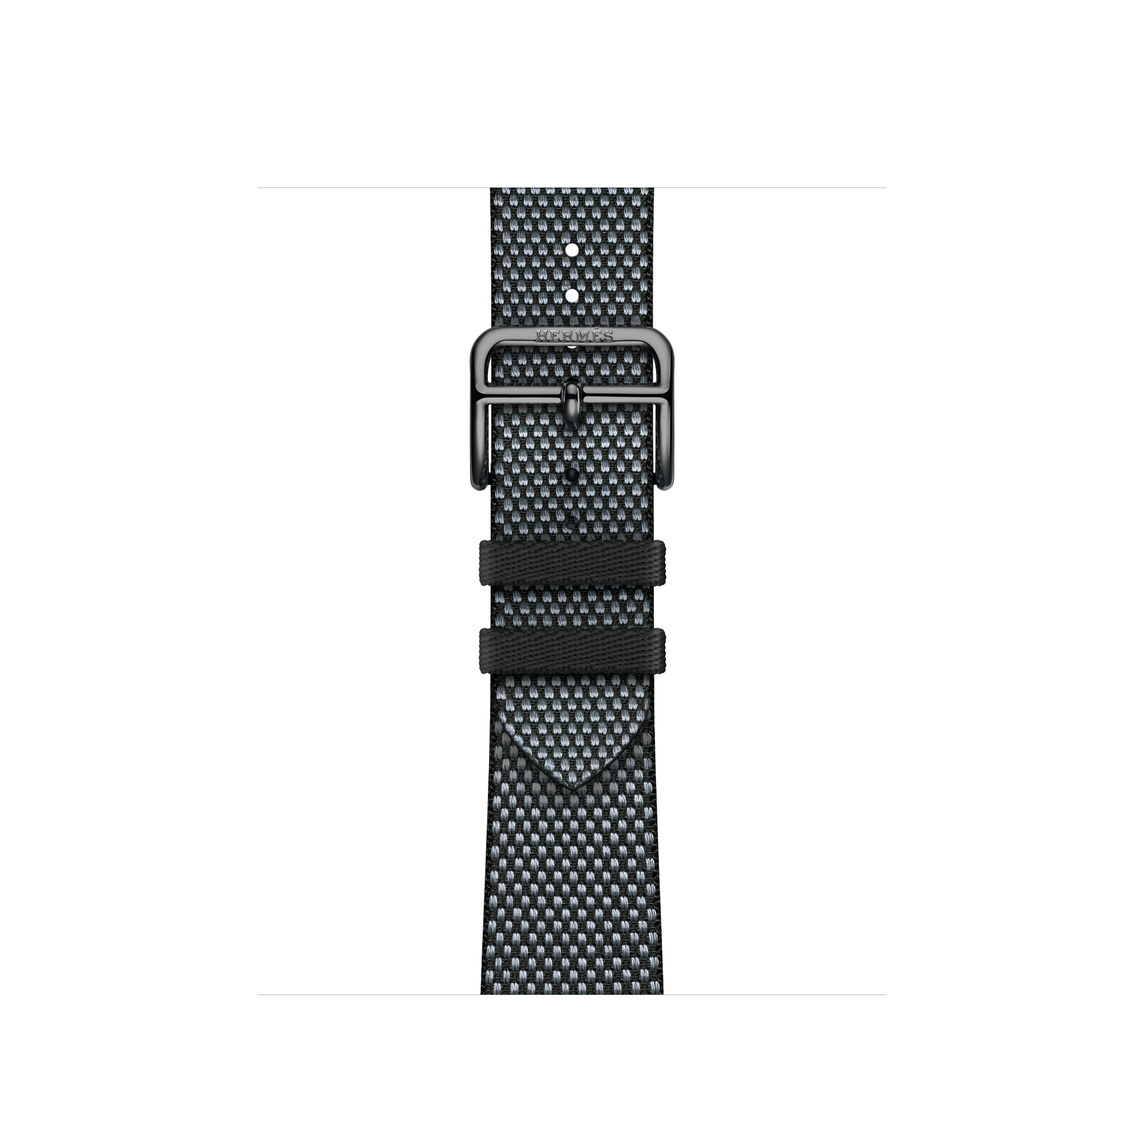 Noir 黑色 (黑色) 配 Denim 丹寧色 (藍色) Toile H Single Tour 錶帶，採用織製布料製成，配以銀色不鏽鋼錶扣。